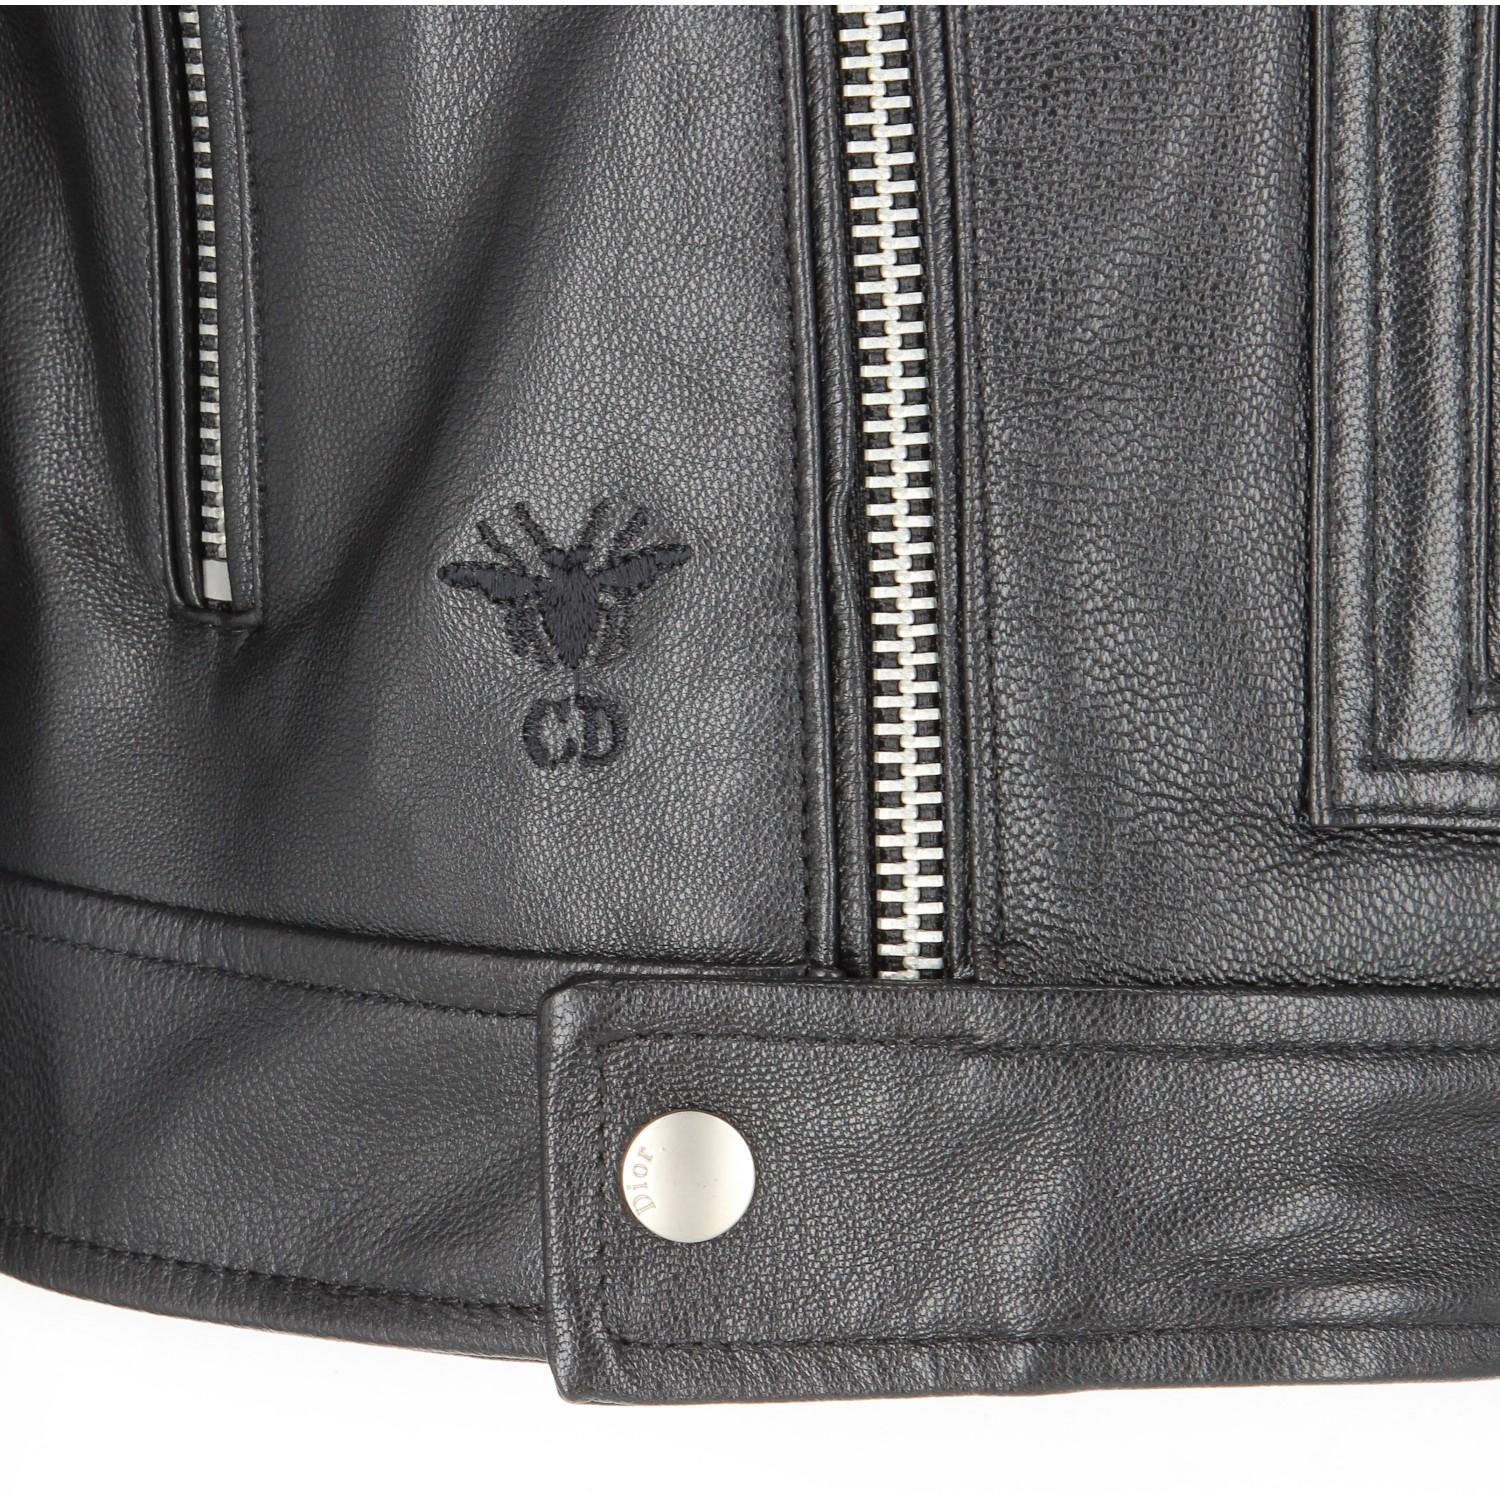 2010s Christian Dior Black Leather Biker Jacket 1